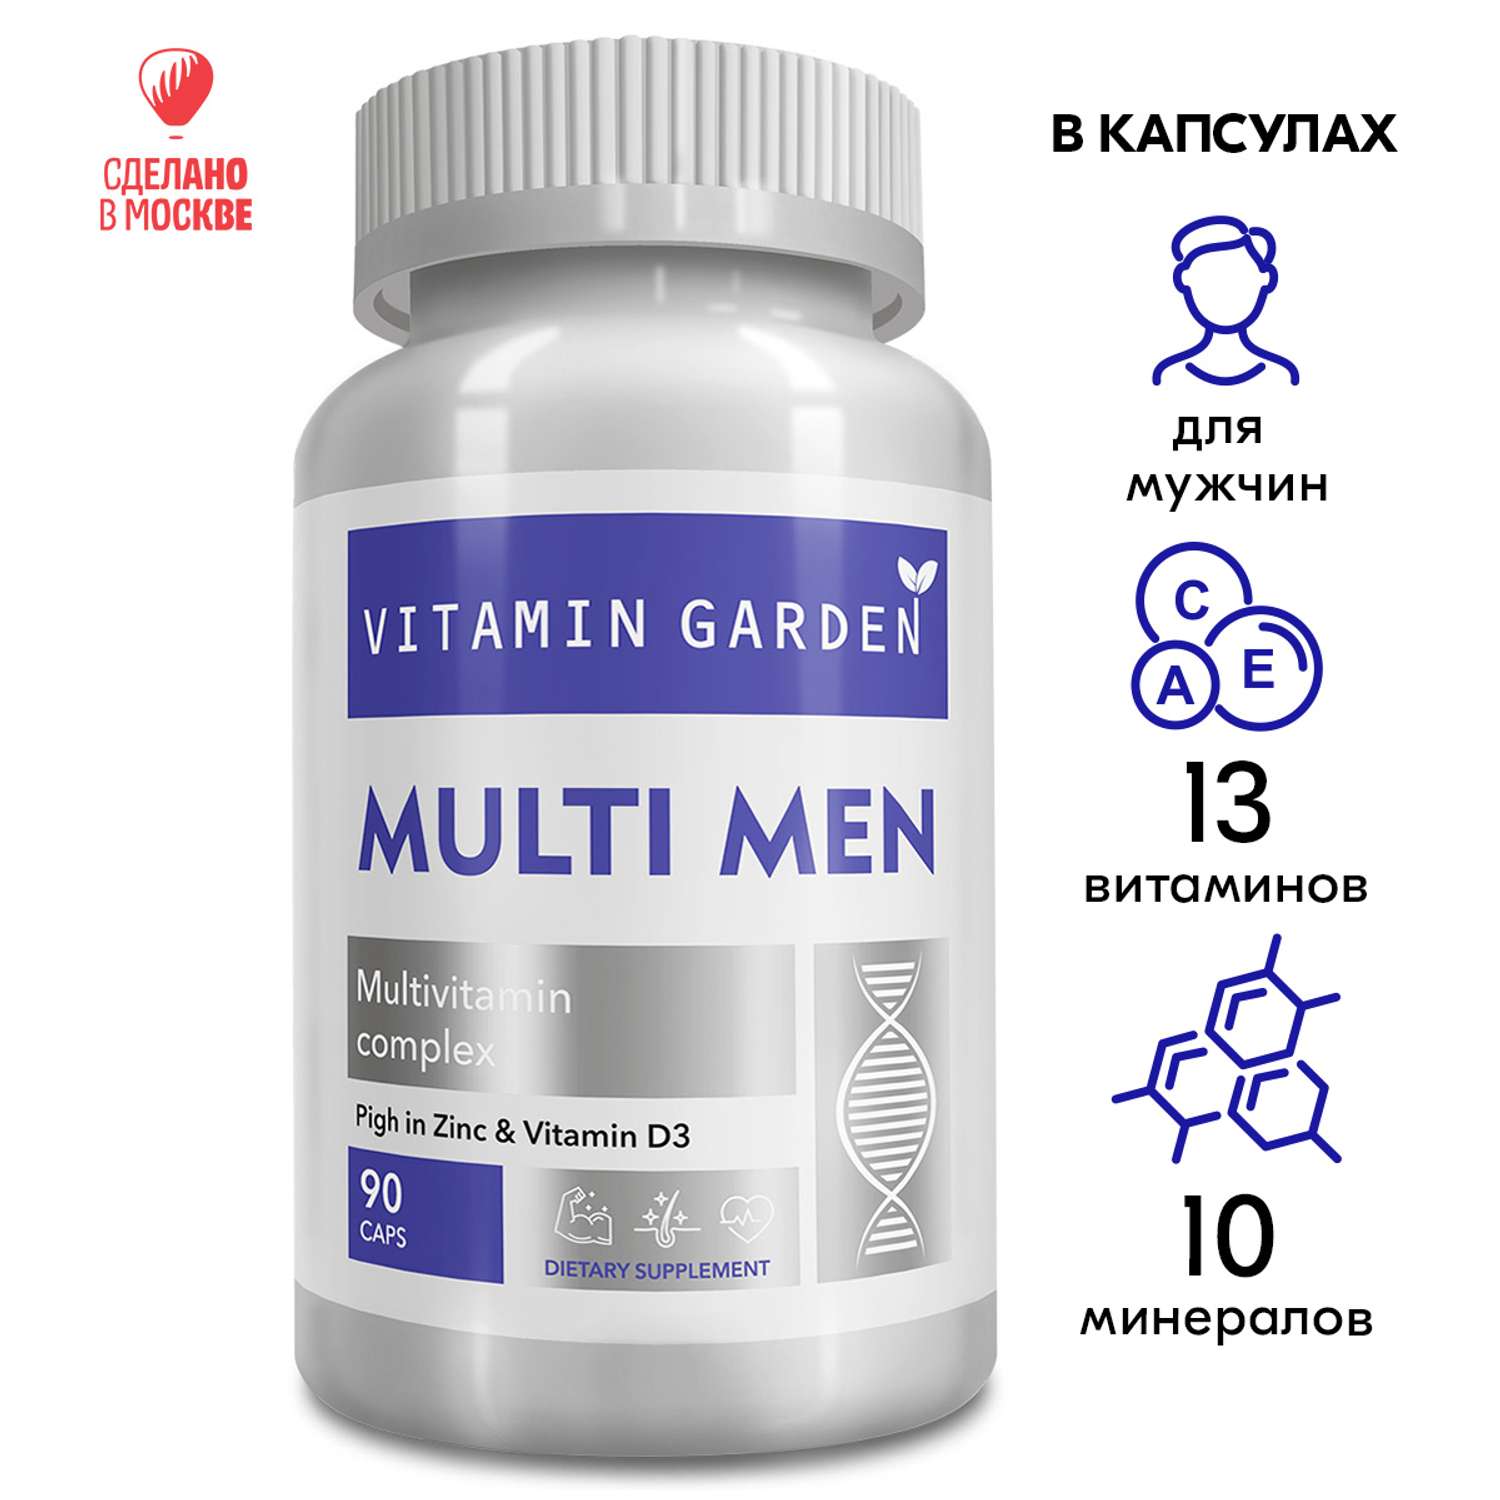 Витамины VITAMIN GARDEN комплекс для мужского здоровья энергии и выносливости 90 капсул - фото 1